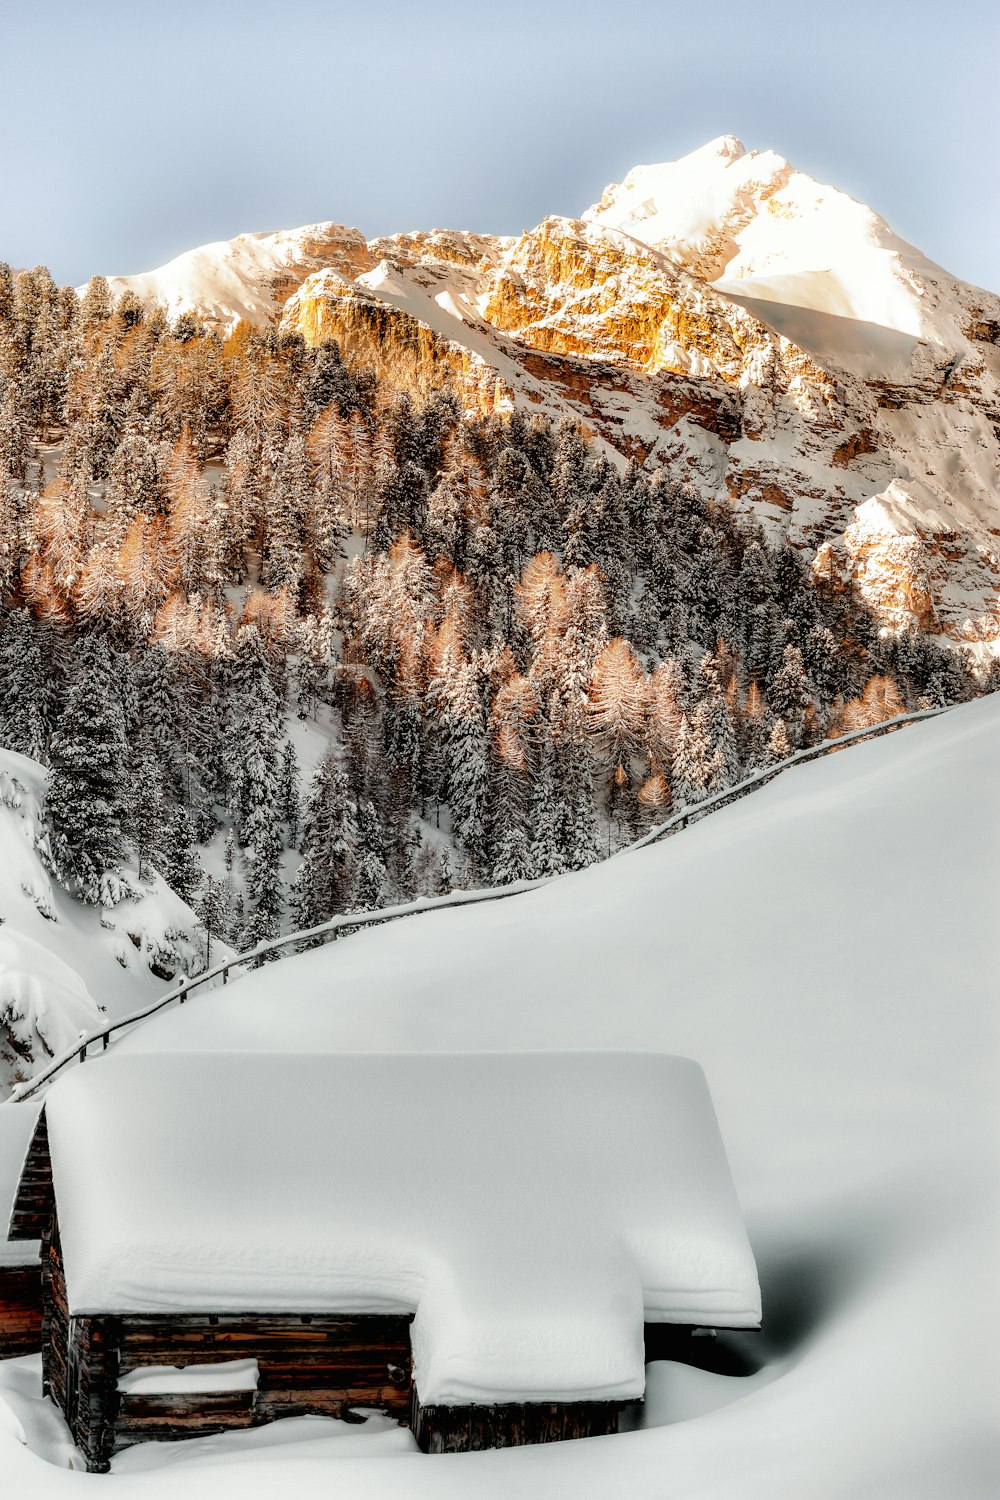 山の近くの雪に覆われた茶色の木造家屋の写真